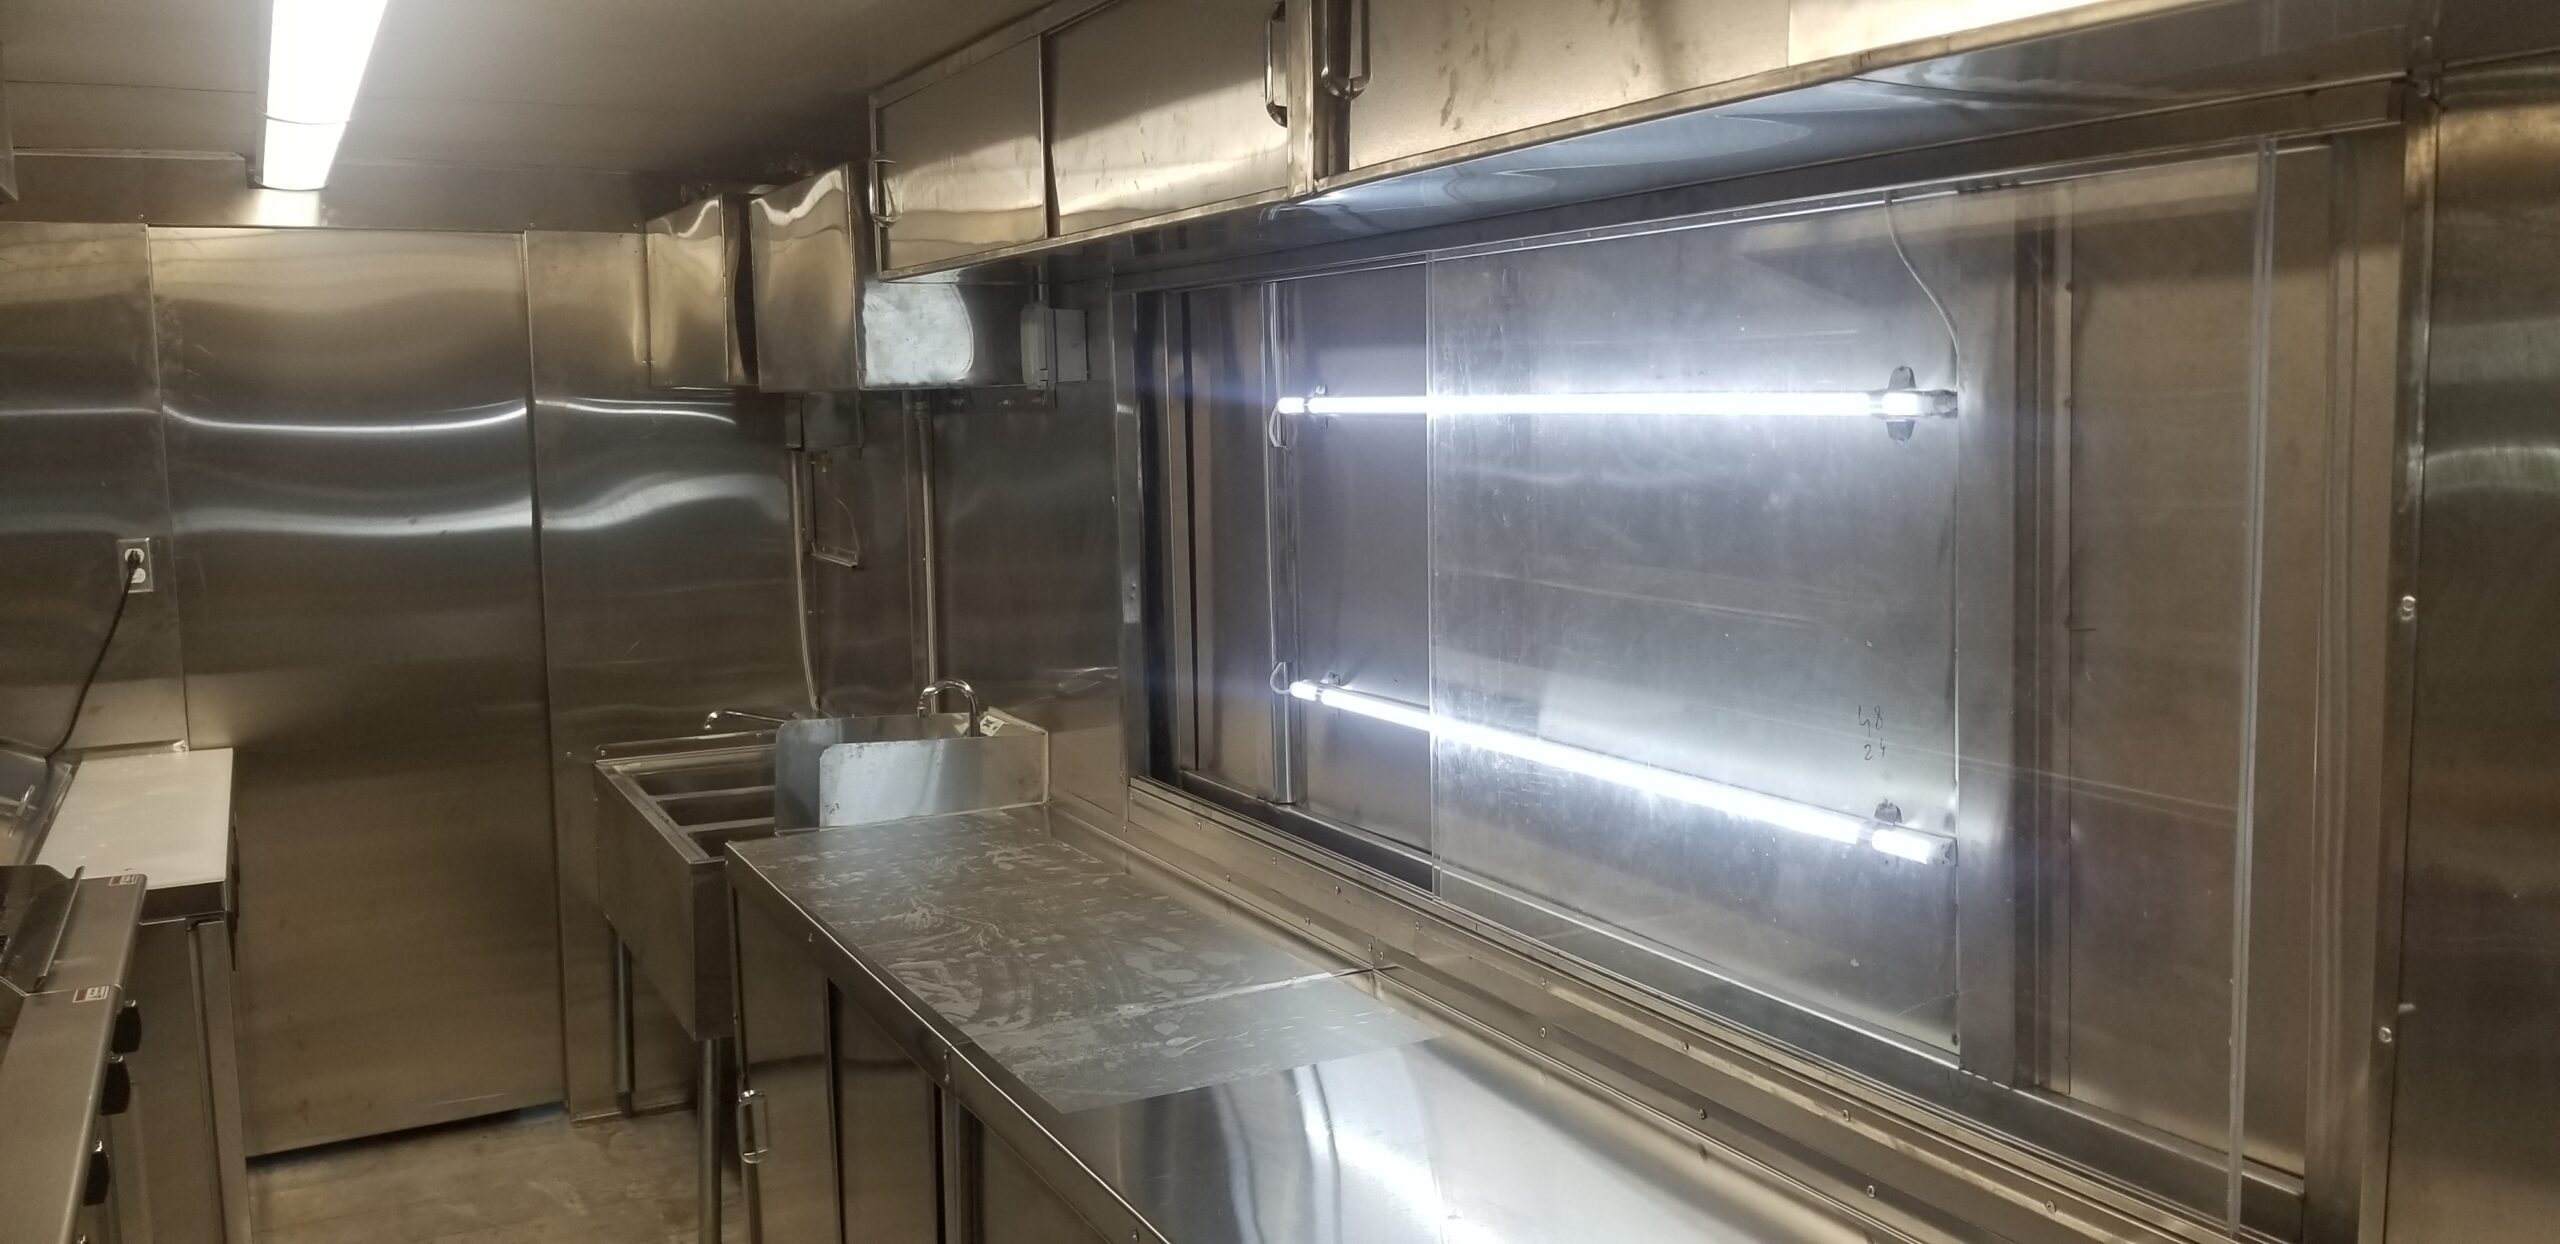 garyssteaks food truck kitchen equipment